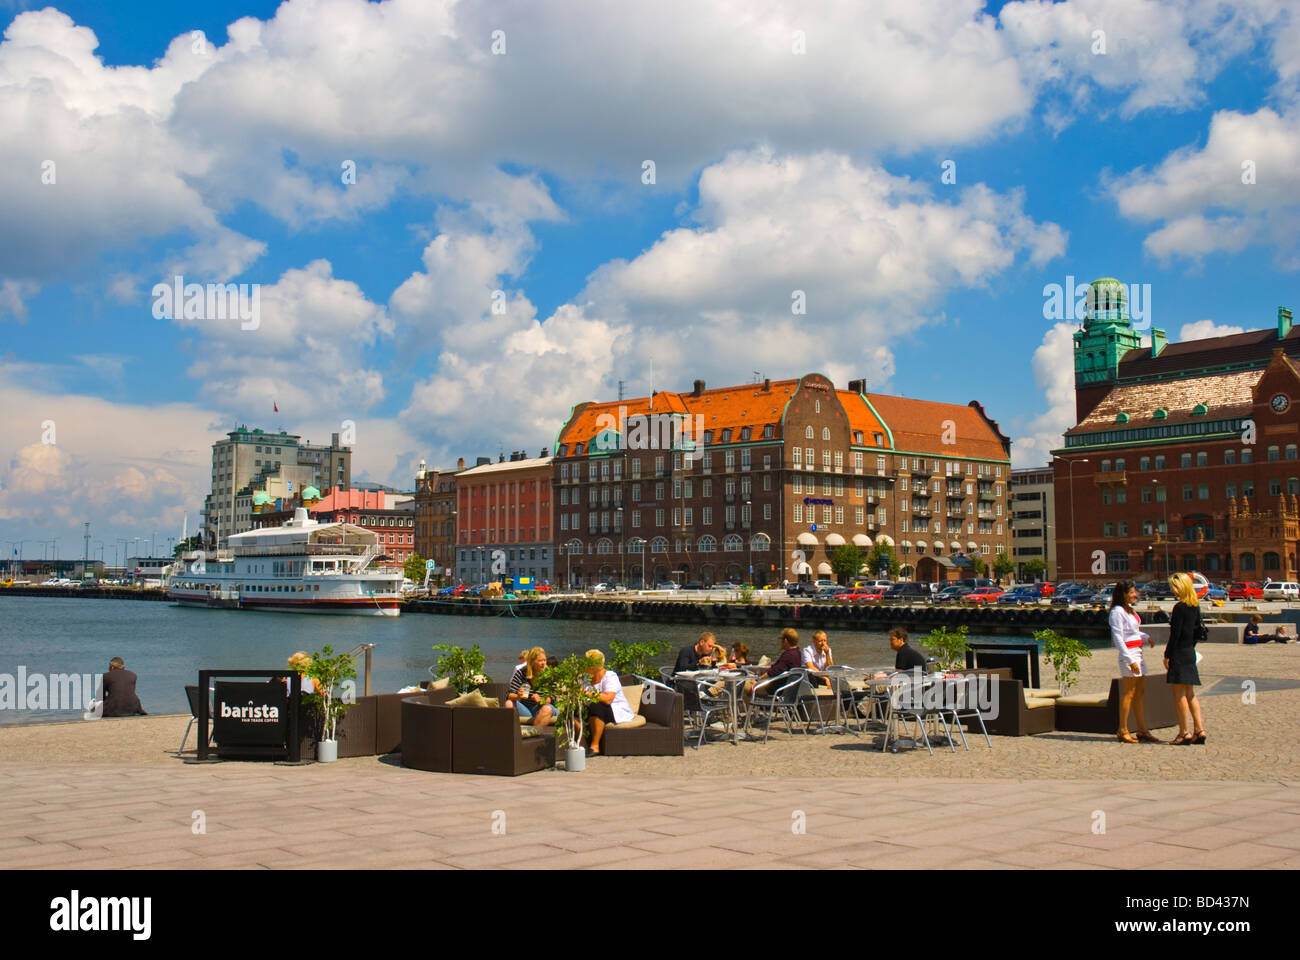 Personnes sur terrasse de café à Bagersplats Inre hamnen Harbour Square à Malmö en Suède Allemagne Europe Banque D'Images